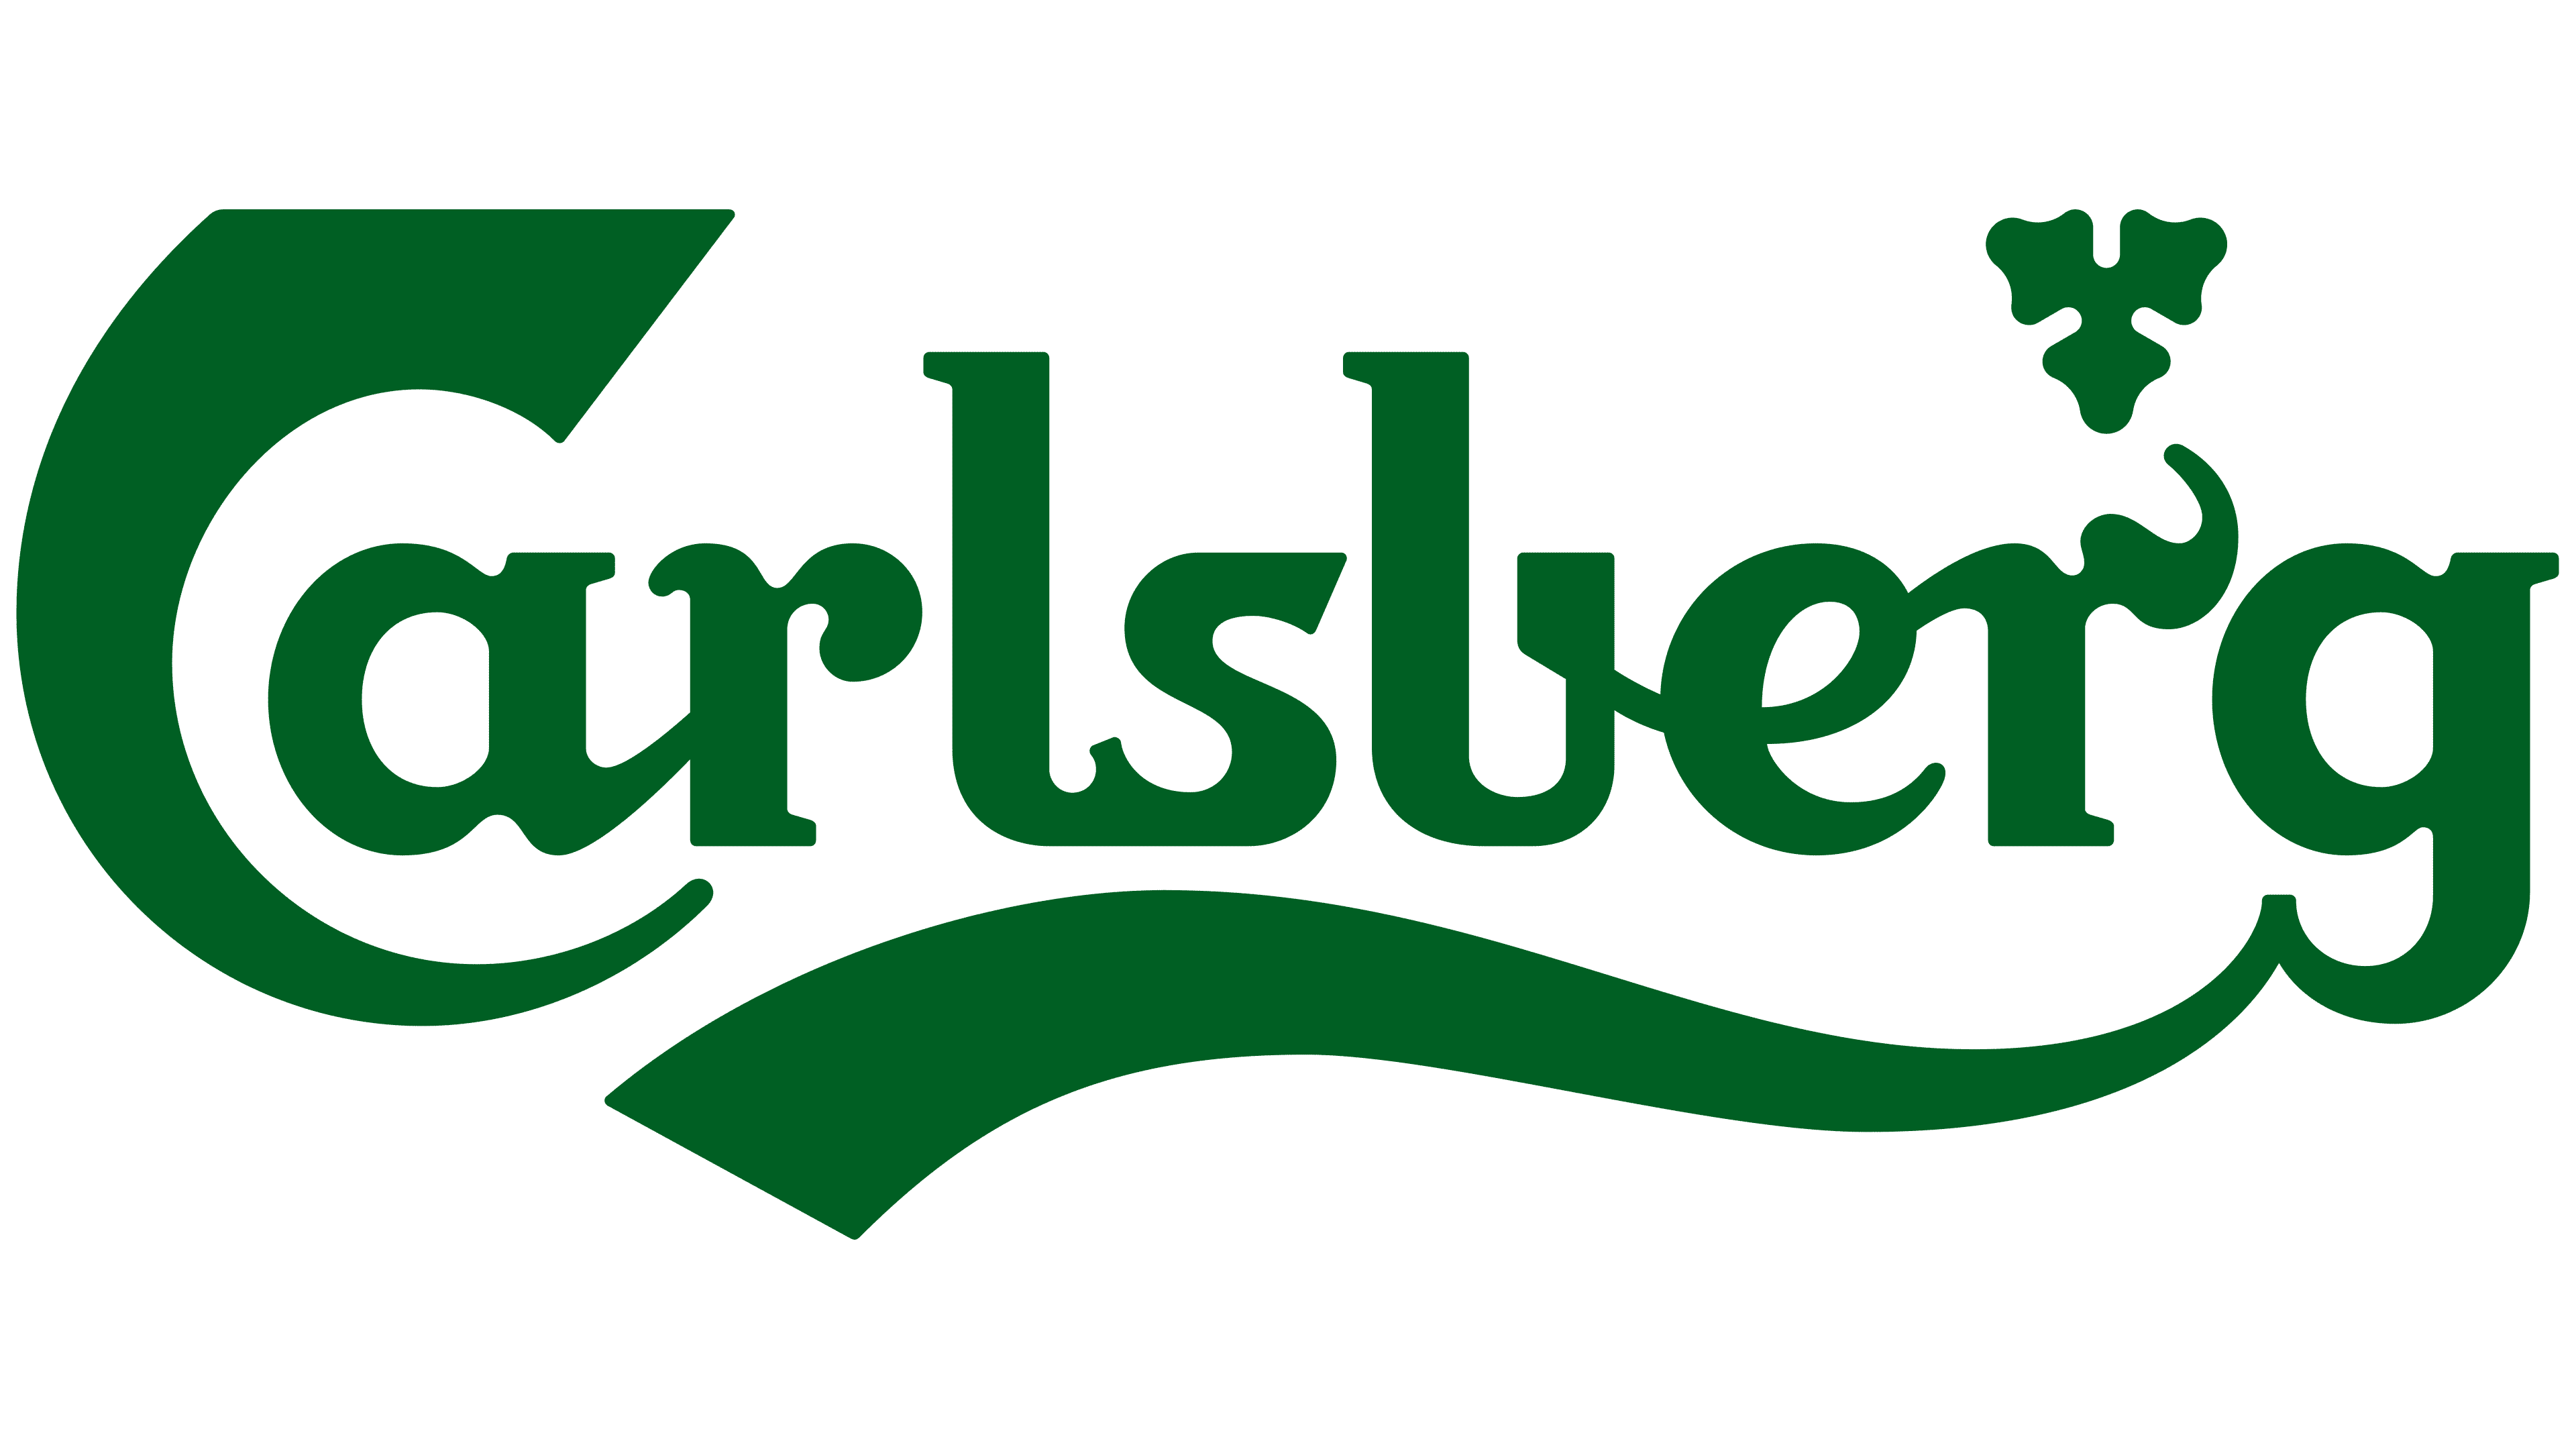 Green Carlsberg logo